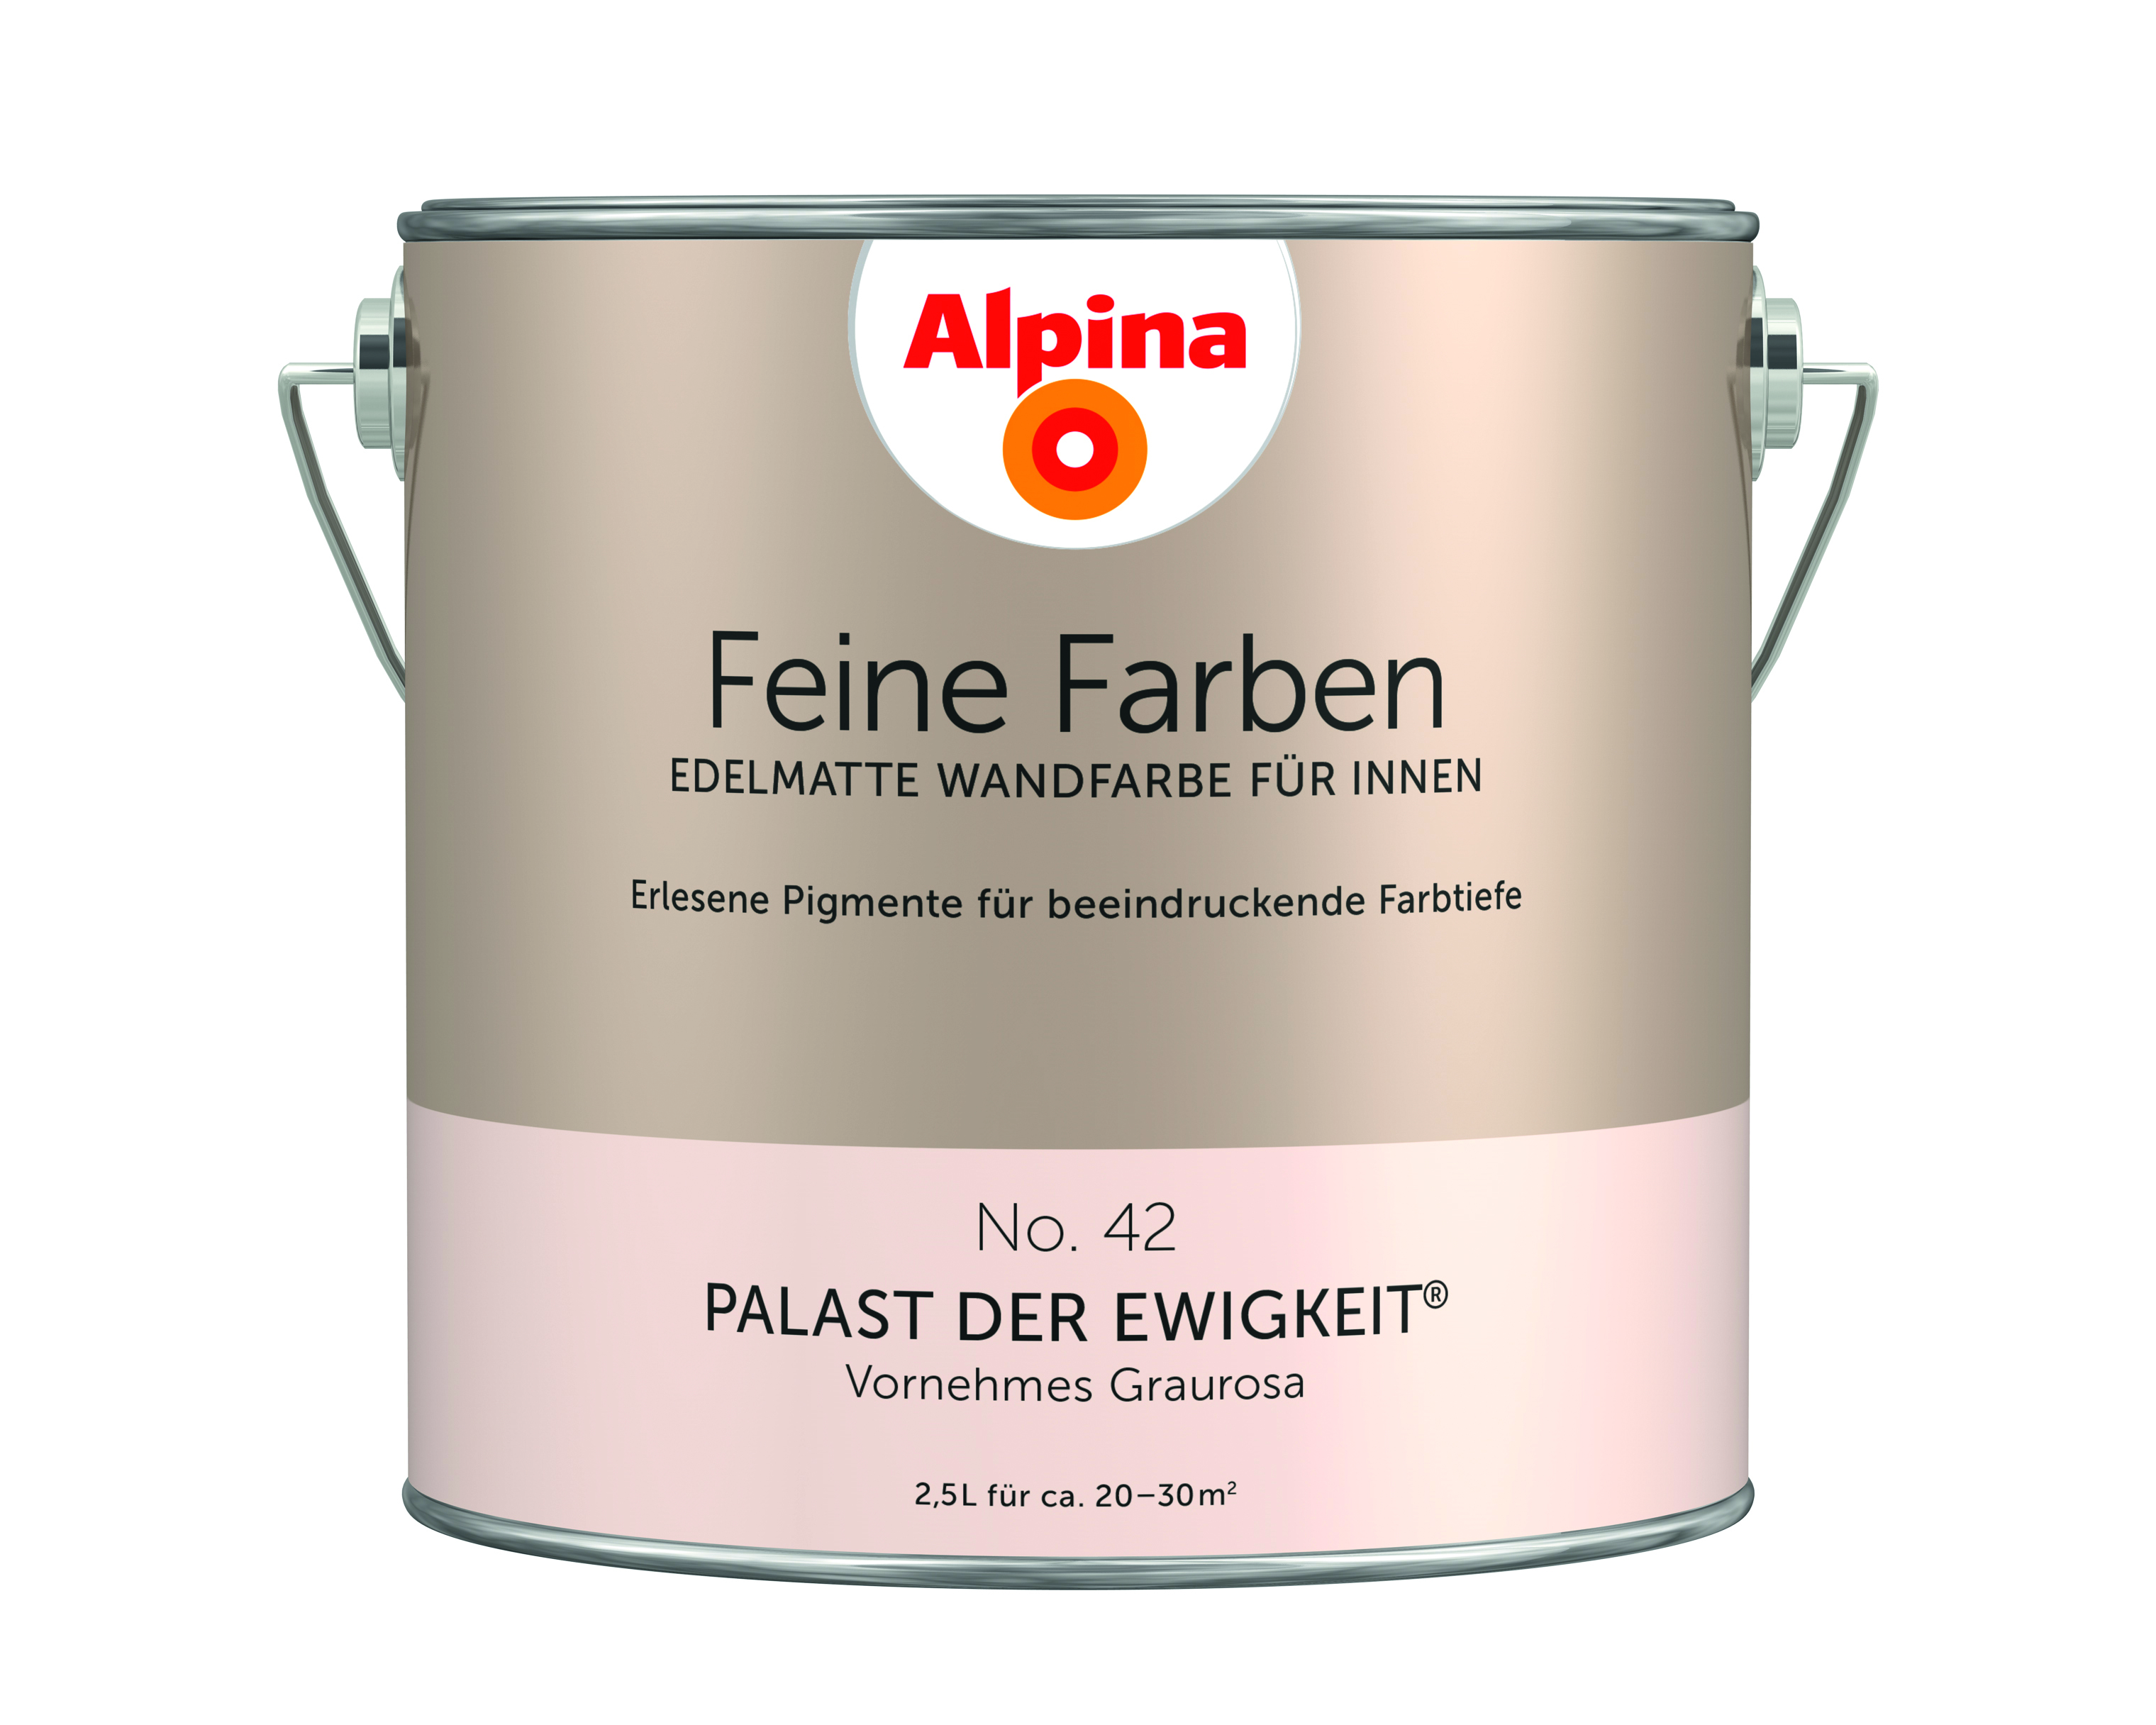 Alpina Feine Farben No. 42, Palast der Ewigkeit